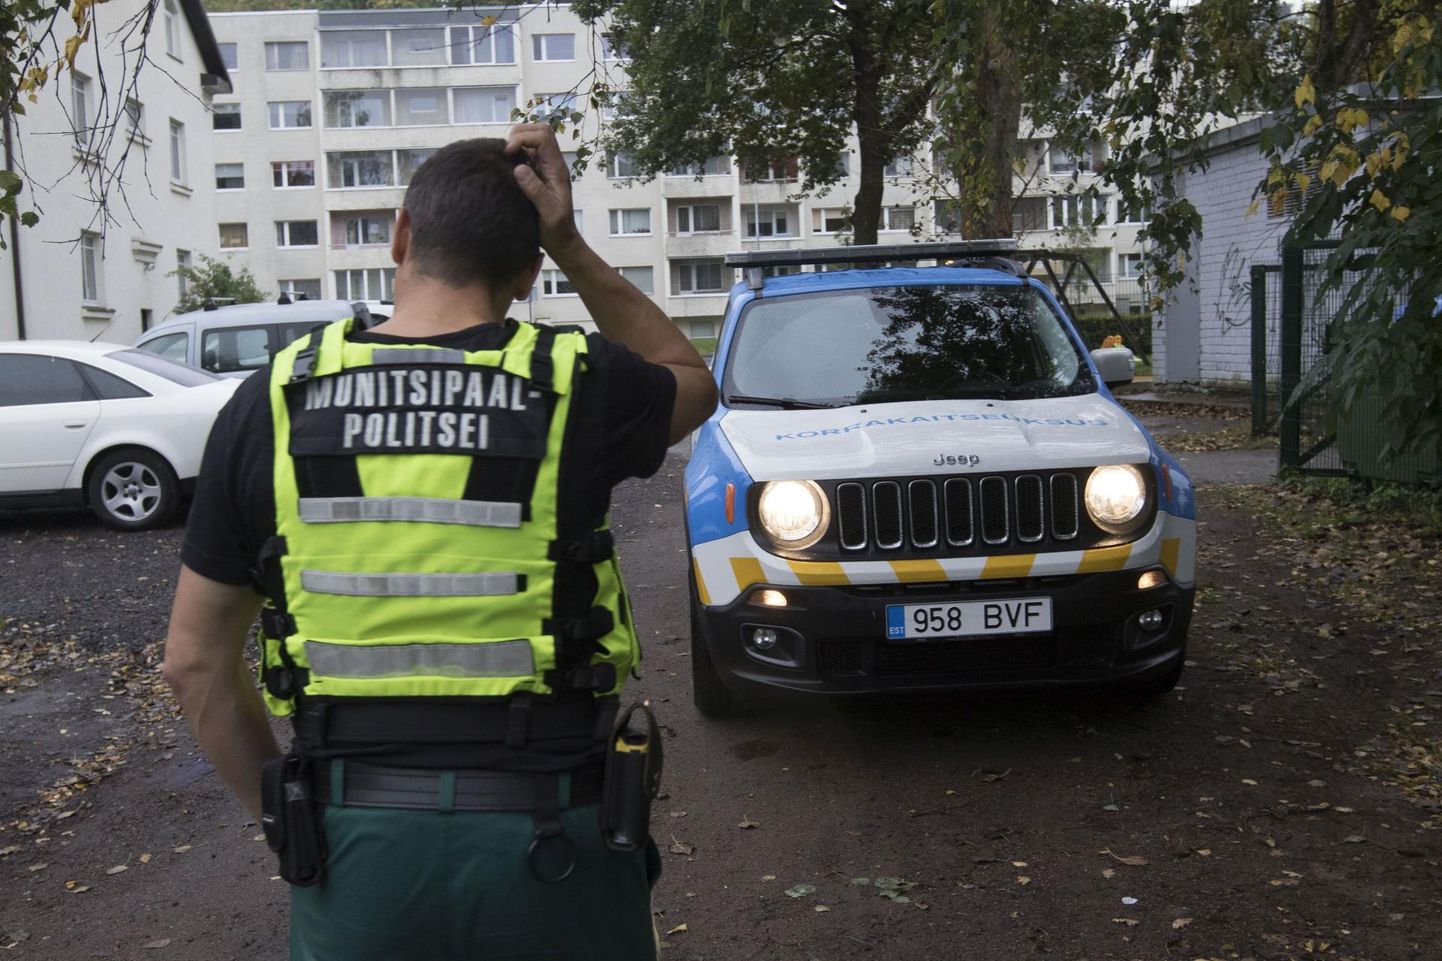 Tallinna munitsipaalpolitseil tuleb tõsisemate juhtumite korral kaasata politsei, kuna neil puudub jõu kasutamise õigus. 